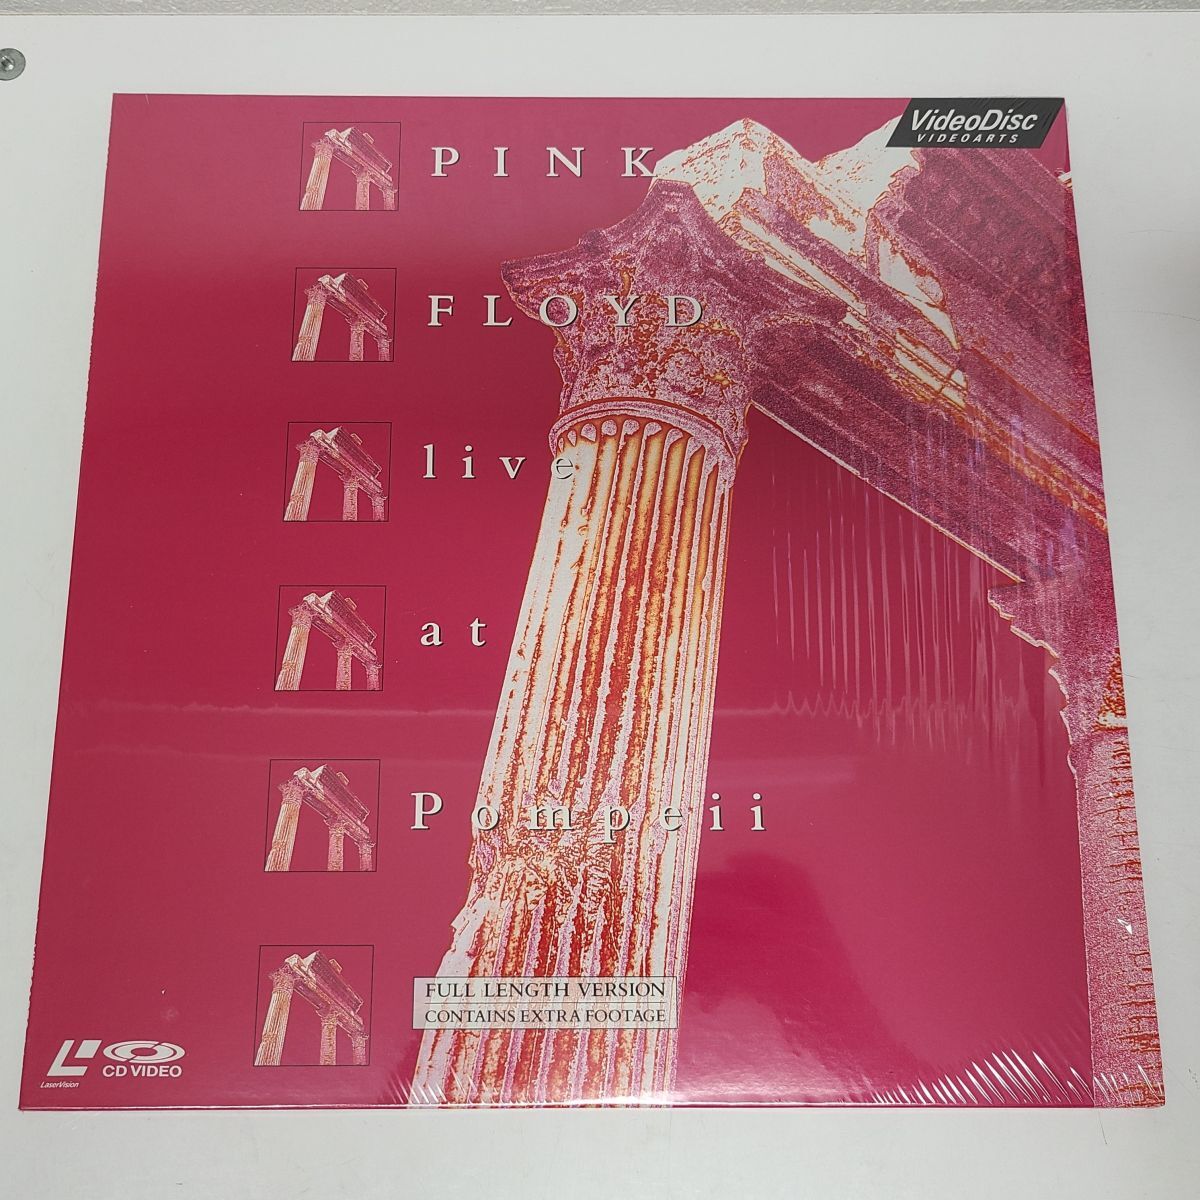 音楽LD / ピンク・フロイド PINK FLOYD live at Pompeii / ビデオアーツ / VAL-3072【M005】の画像1